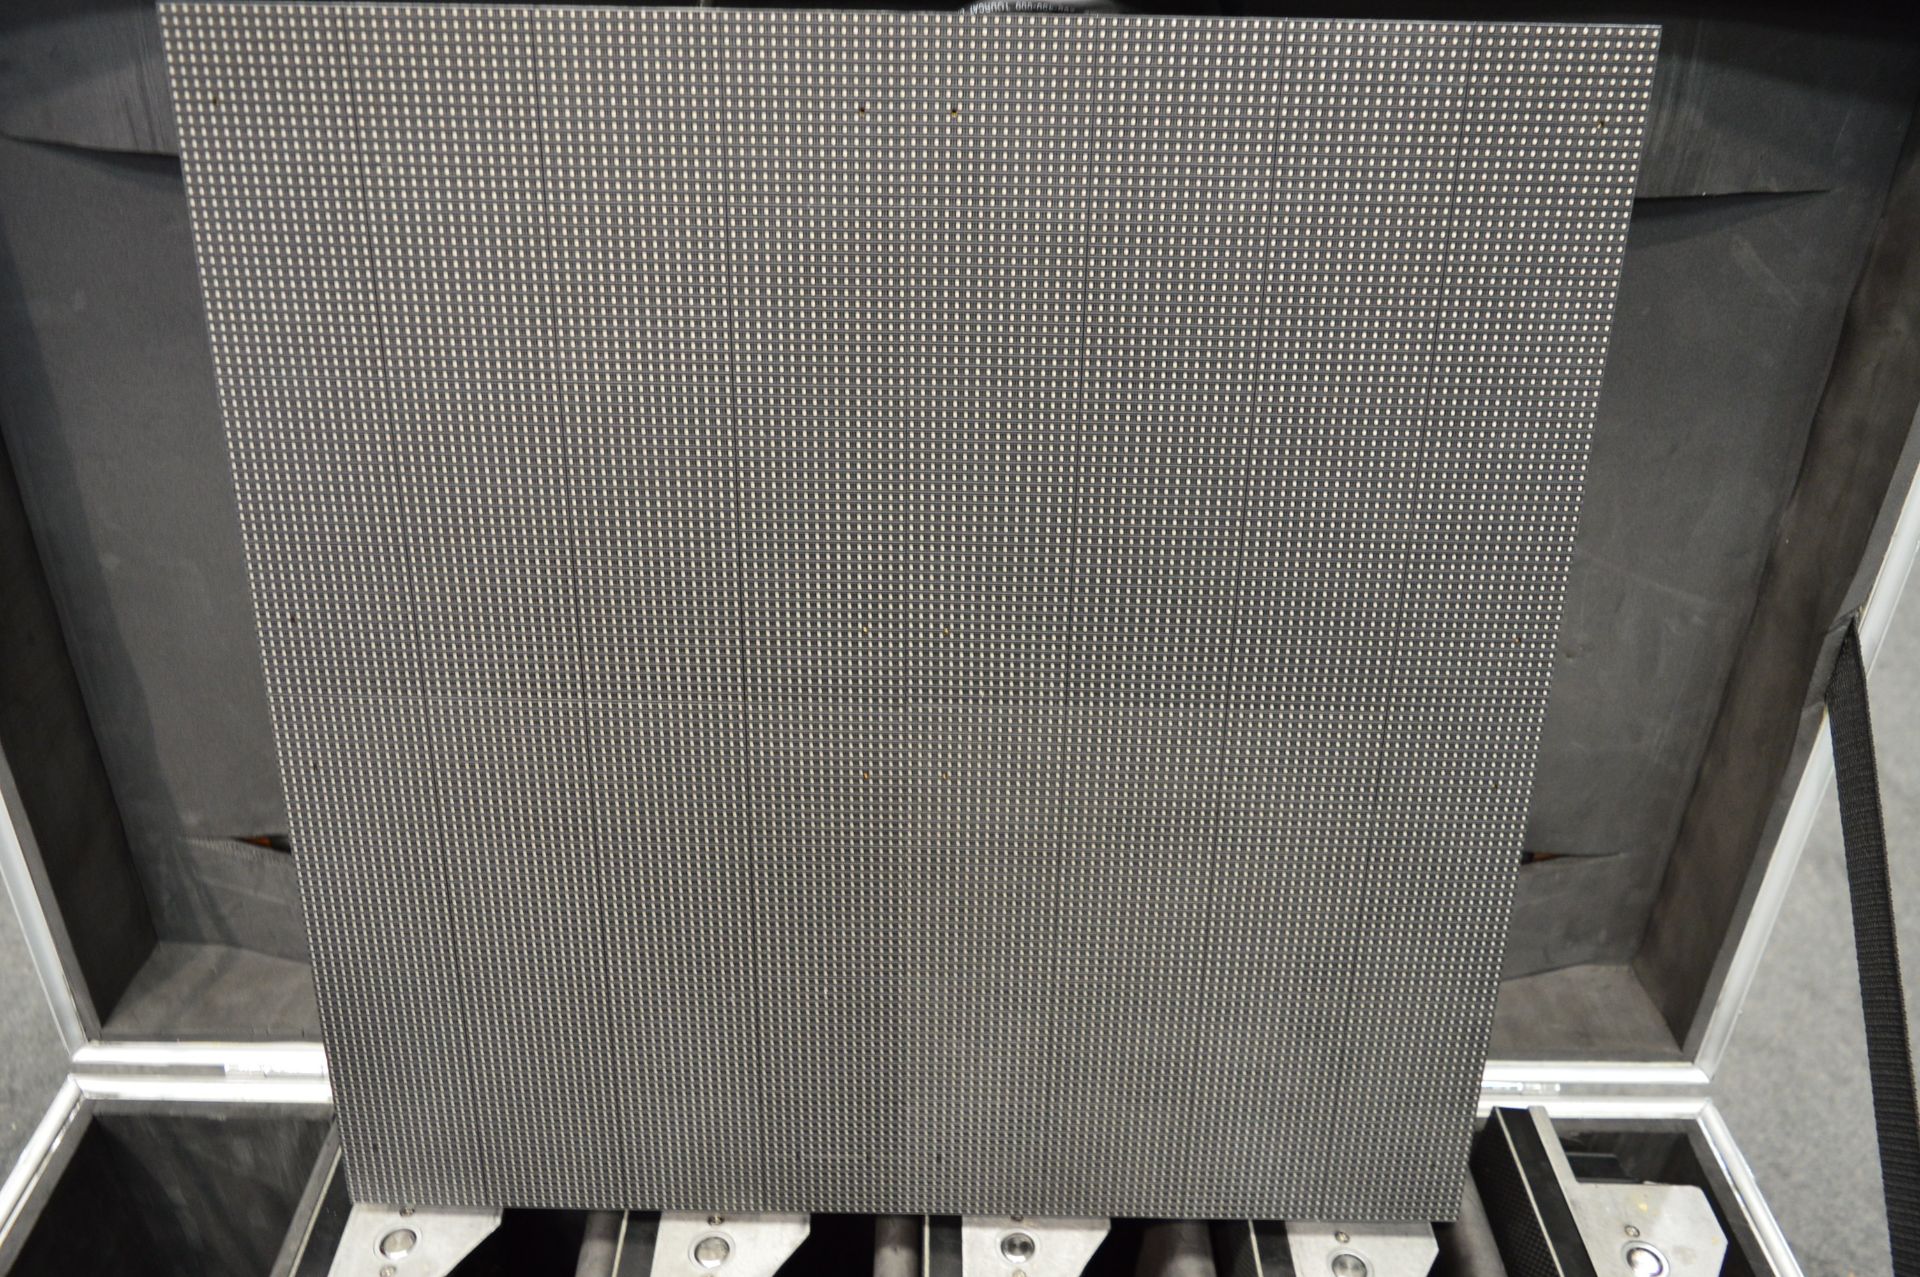 6x No. DigiLED 3.9mm LED panels, Model HRi3900, si